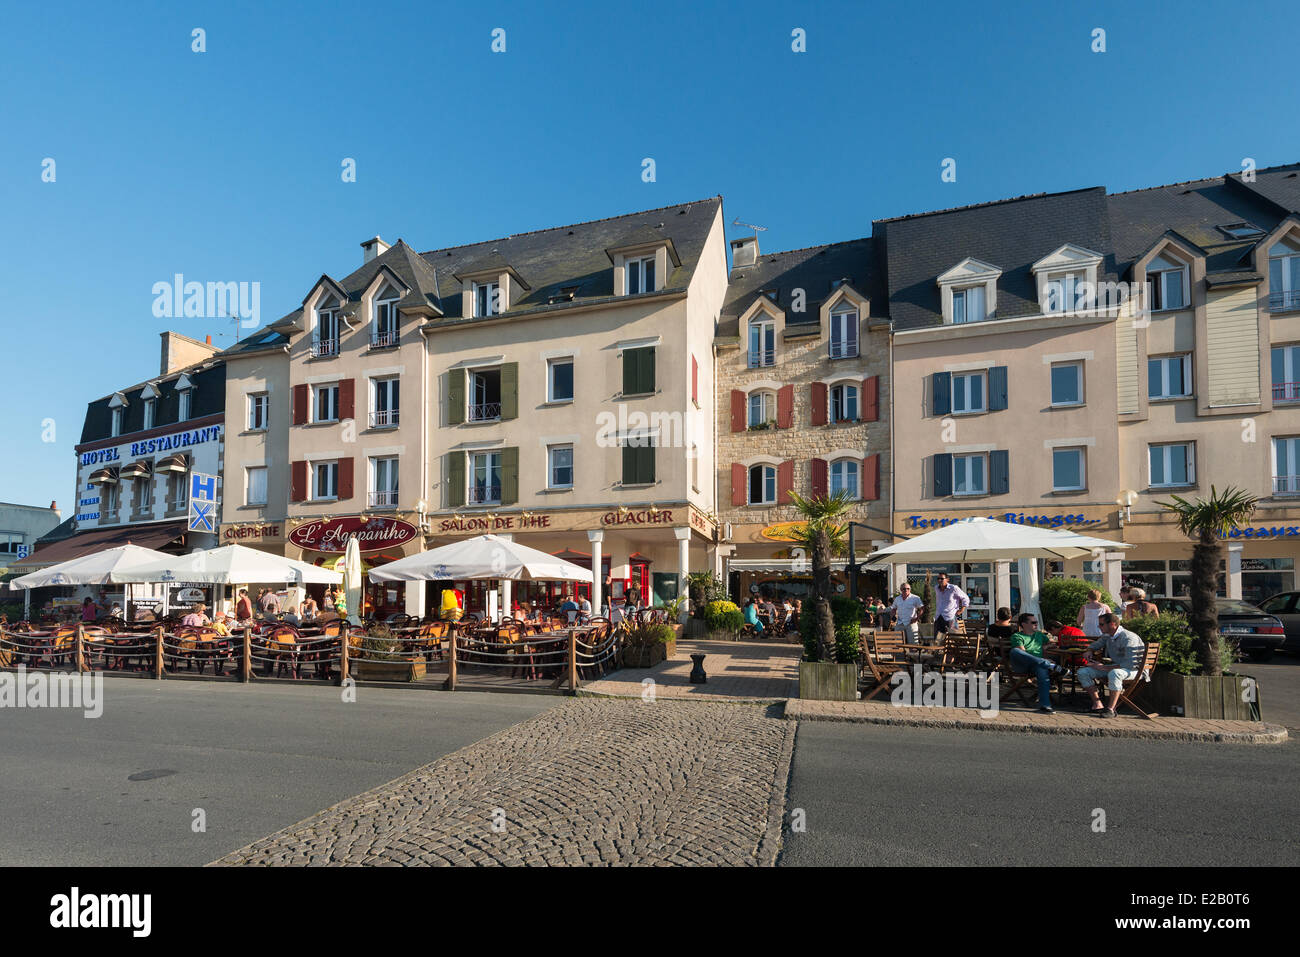 France, Cotes d'Armor, Paimpol, terrace in Place du Goelo Stock Photo